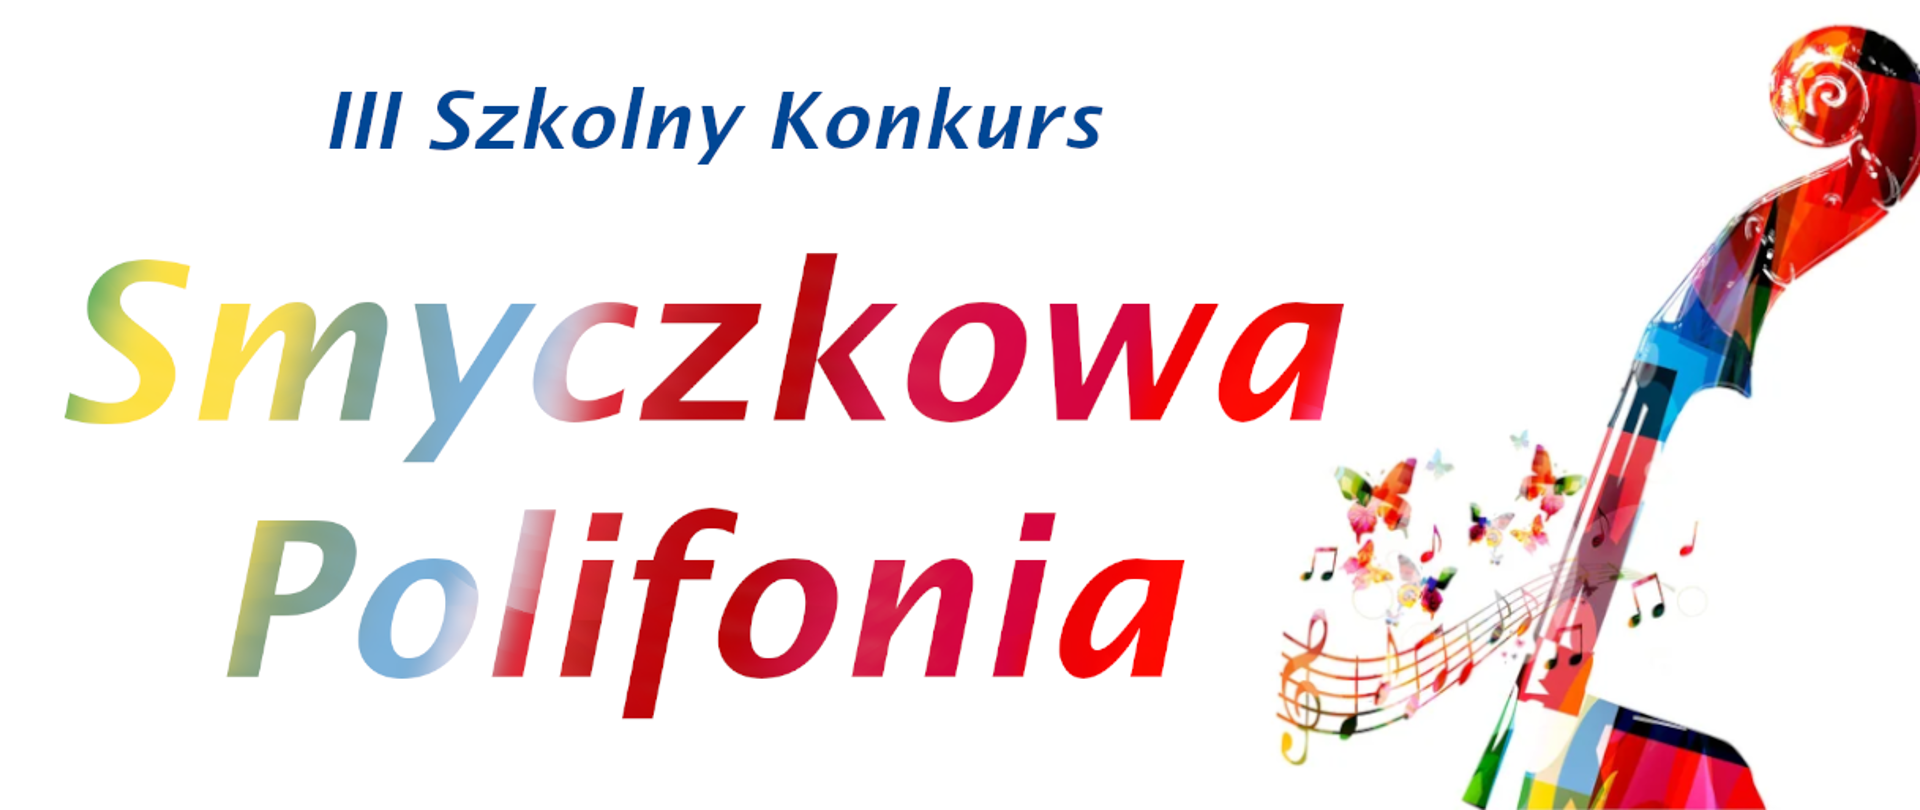 Na białym tle kolorowymi literami napis 3 szkolny konkurs Smyczkowa Polifonia, z prawej strony rysunek gryfu i główki skrzypiec